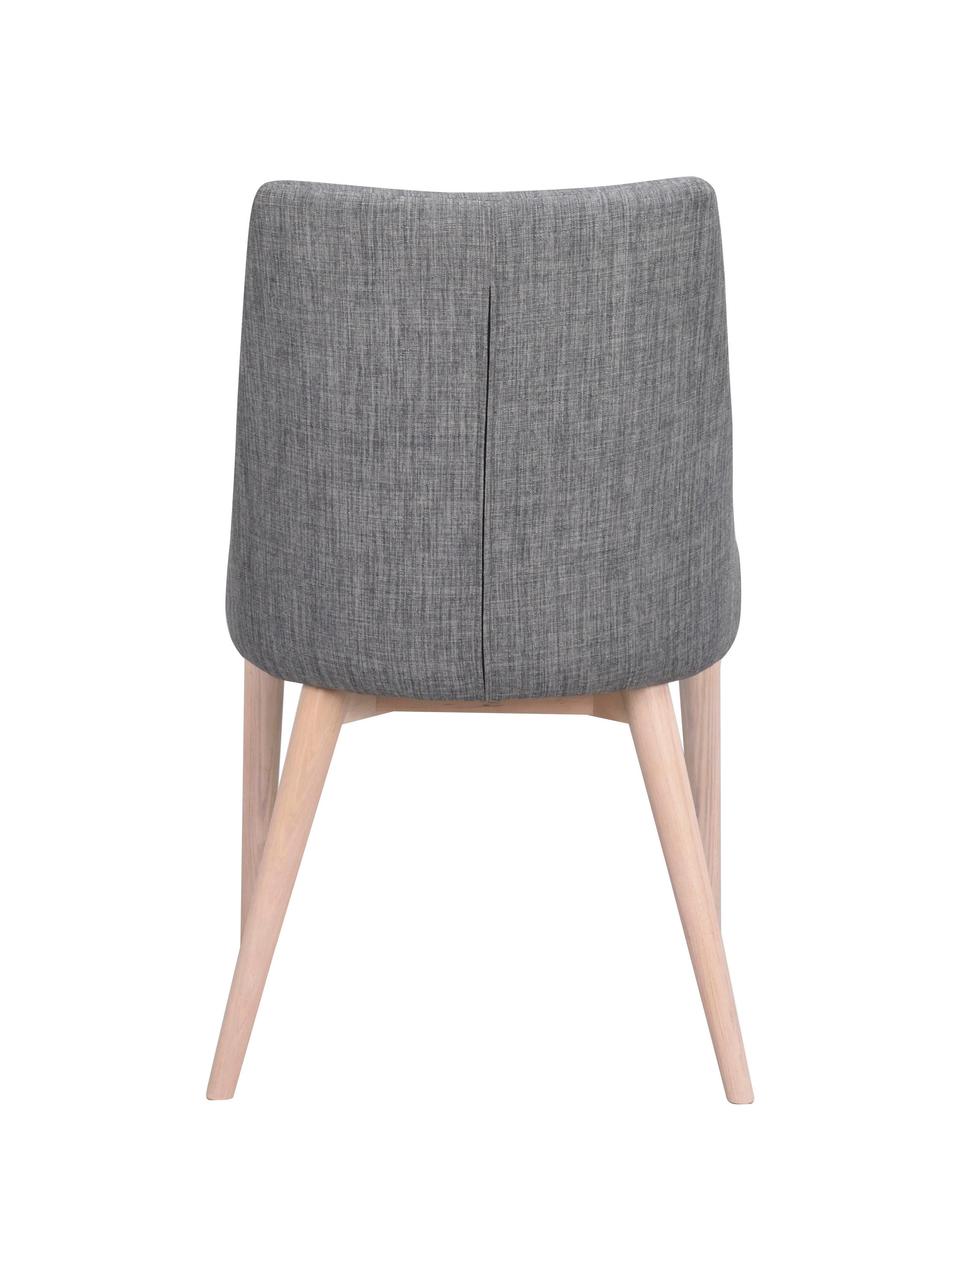 Čalouněná židle v skandinávském stylu Bea, Tmavě šedá, dub